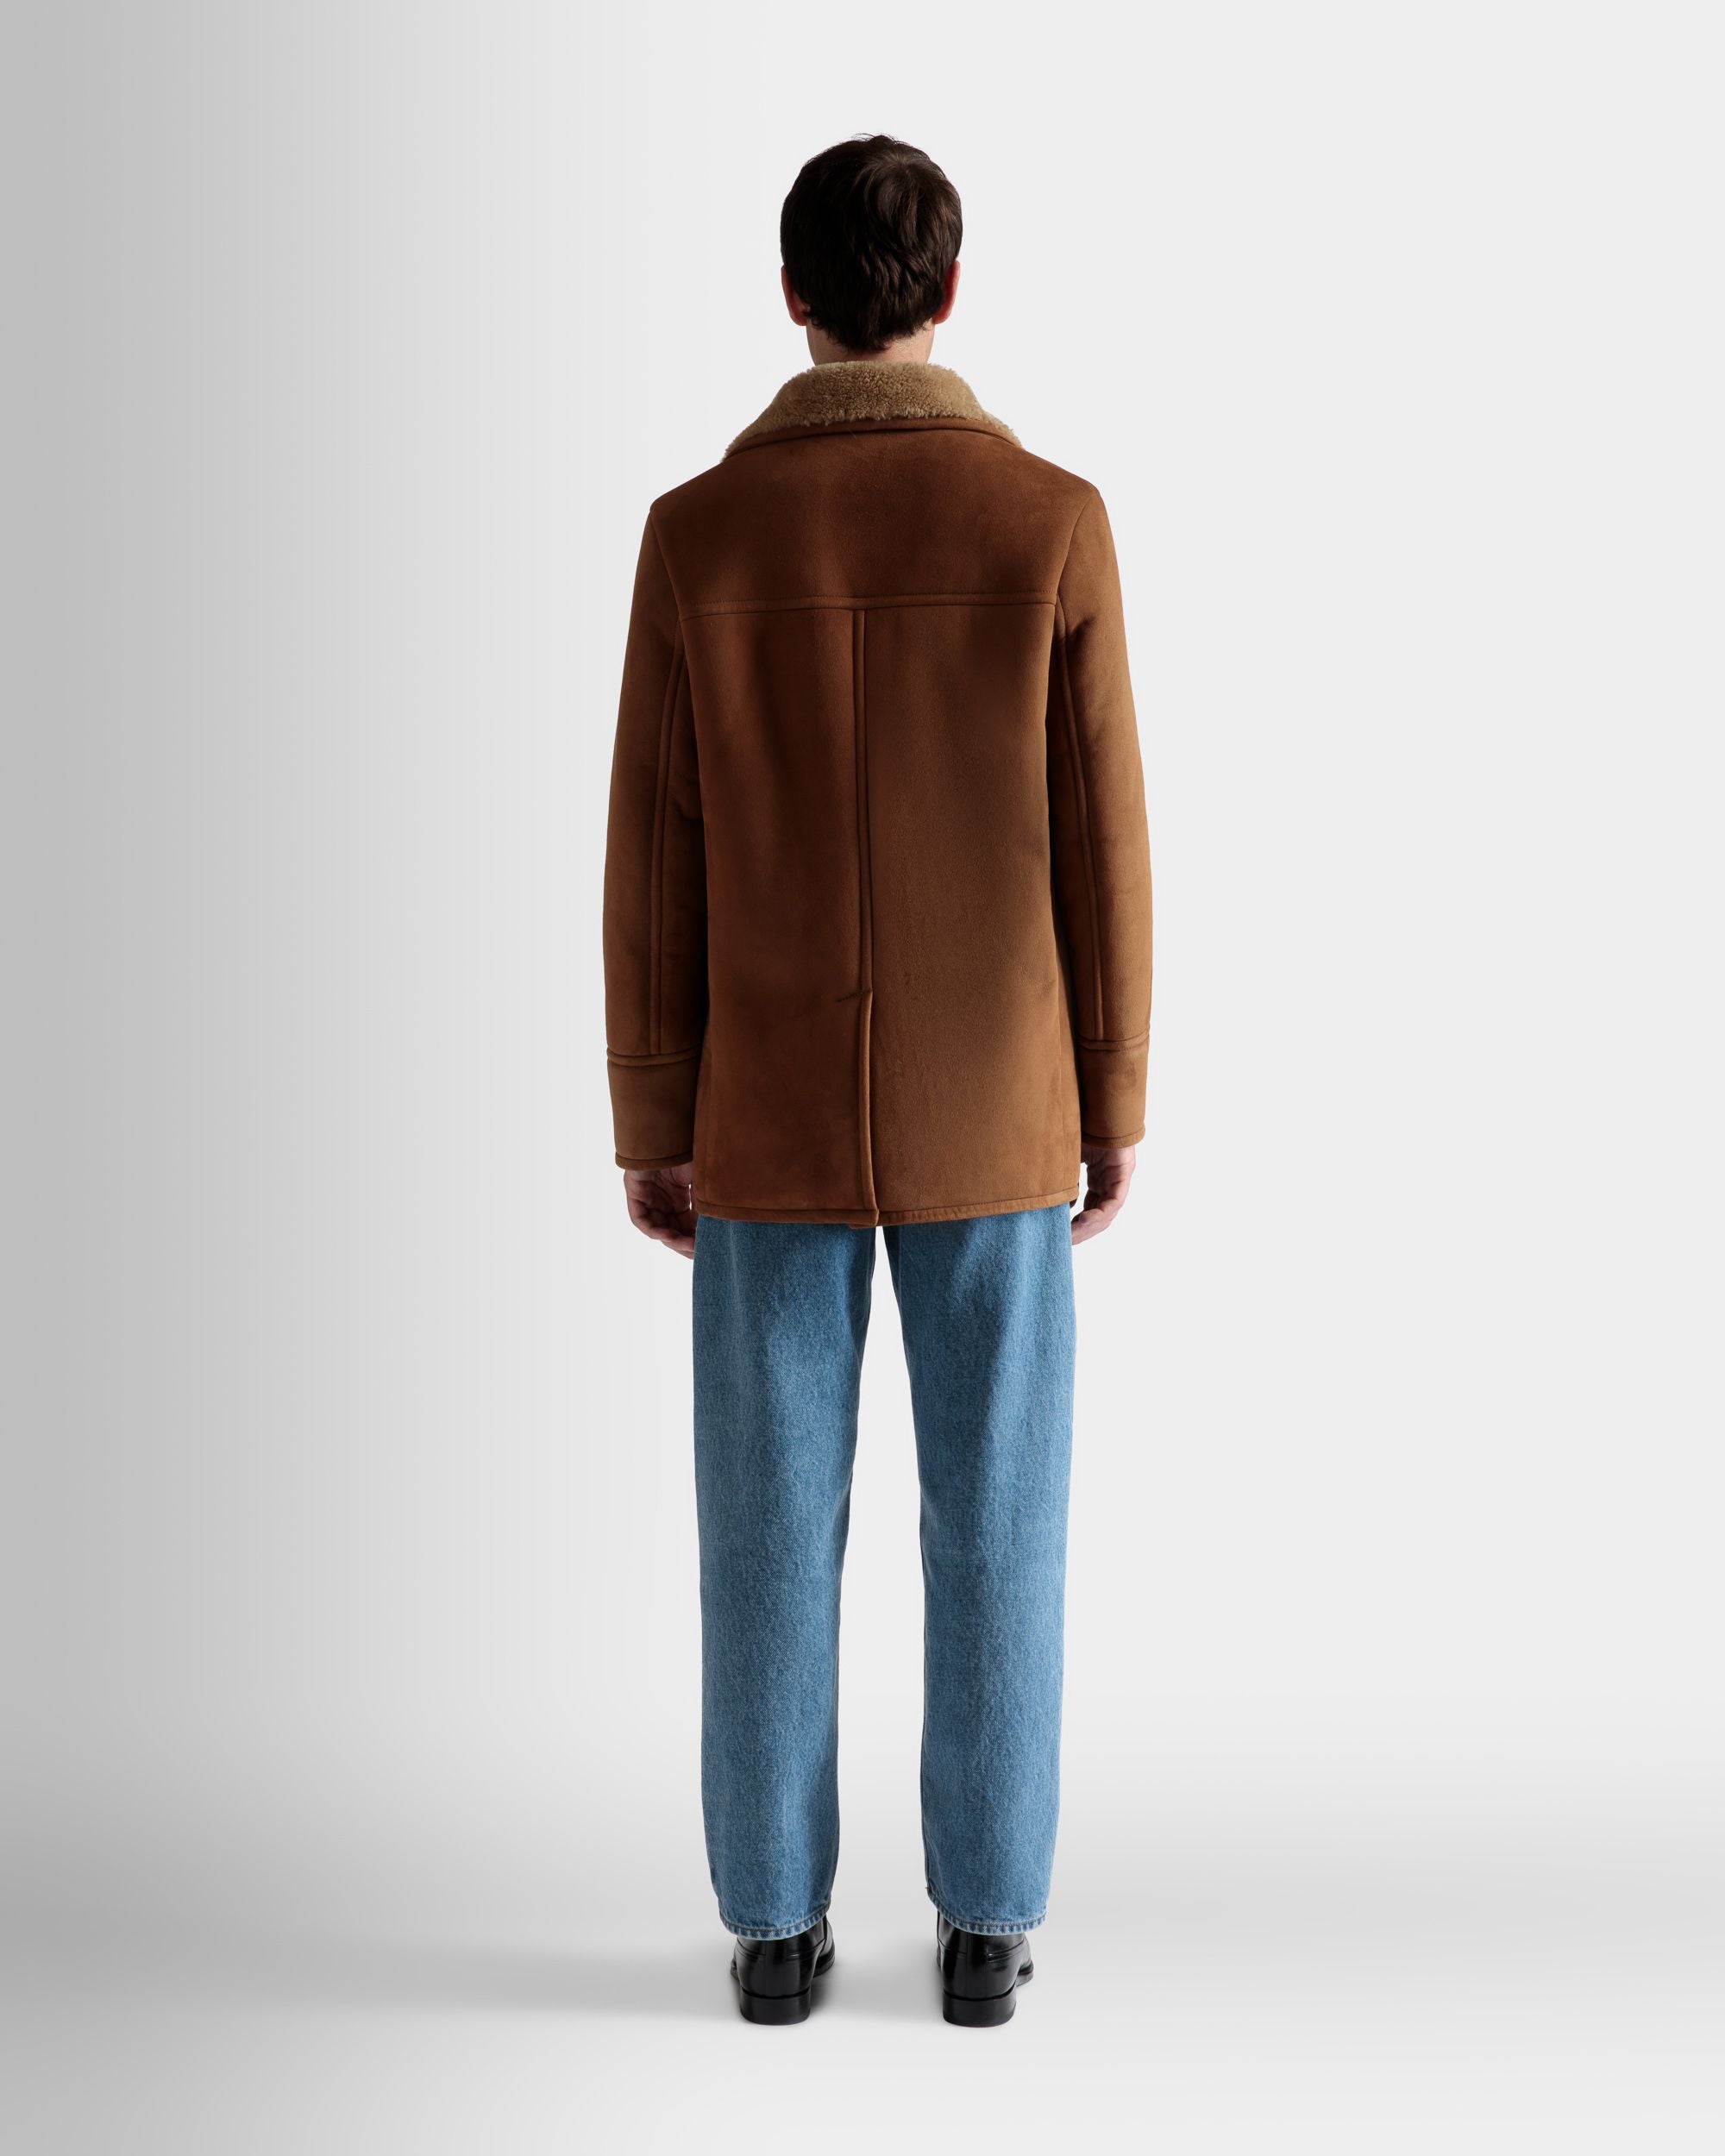 Zweireihiger Lammfellmantel | Jacken und Mäntel für Herren | Braunes Veloursleder | Bally | Model getragen Rückseite